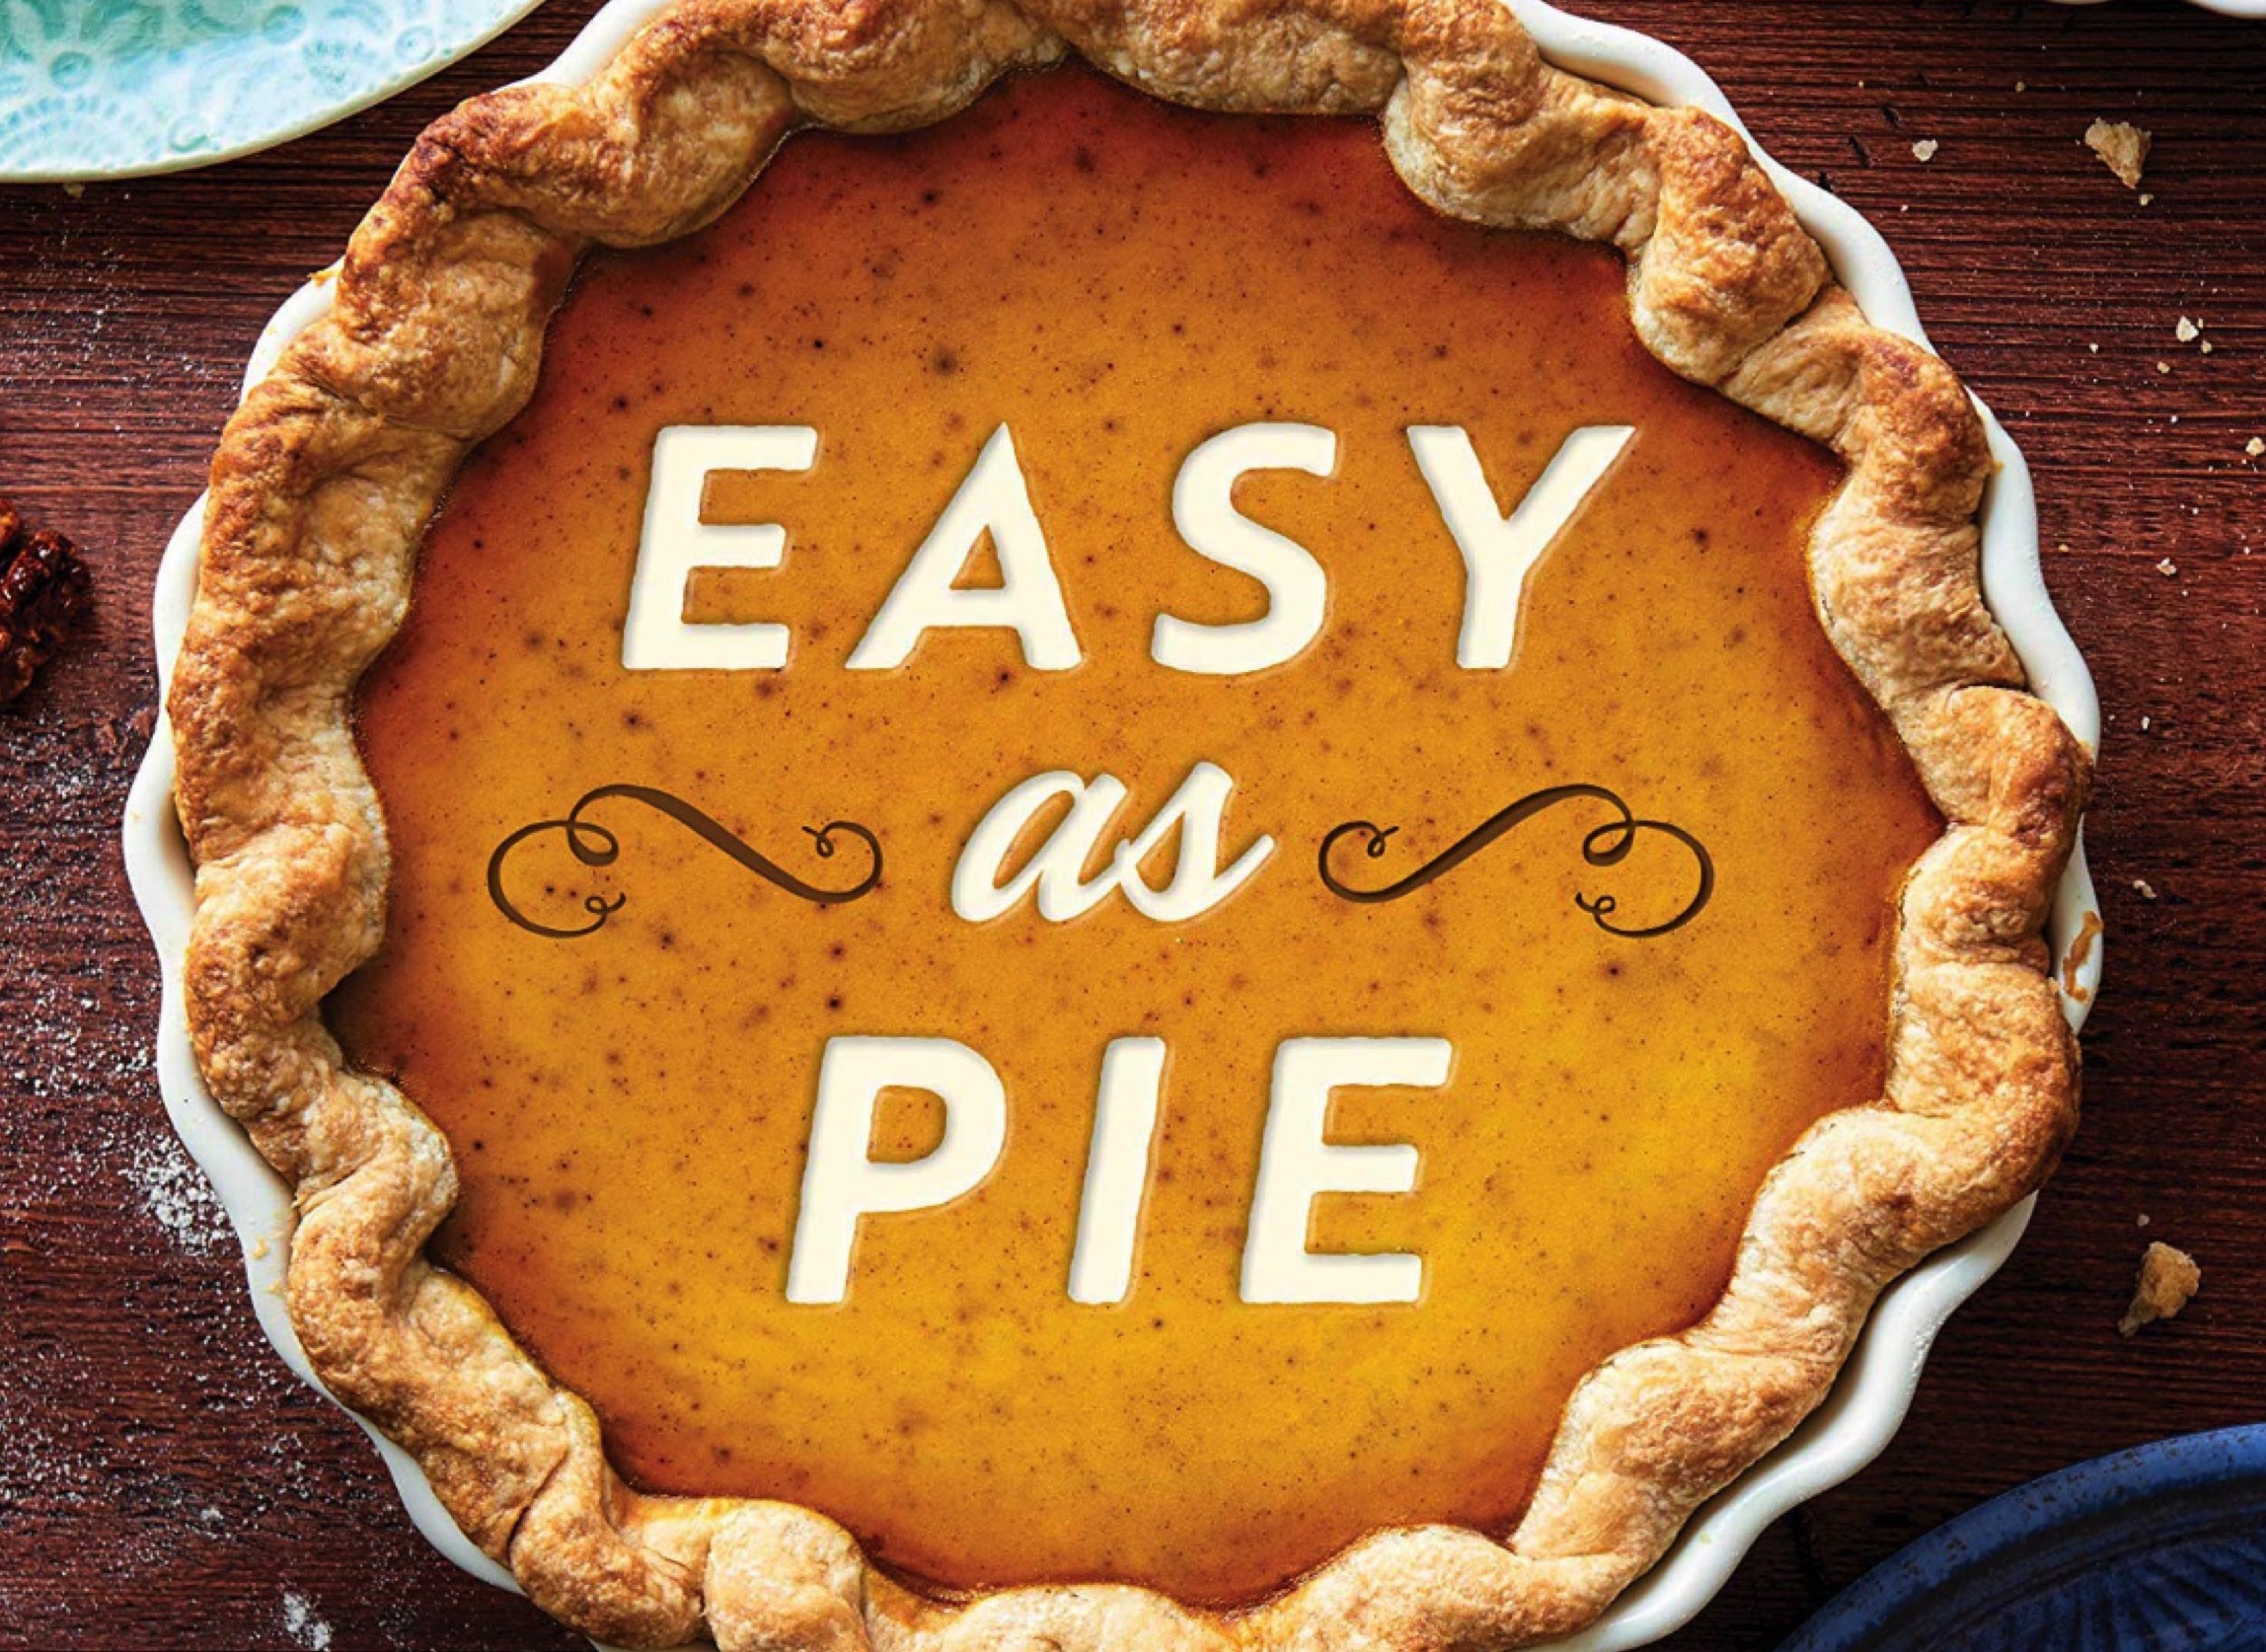 Ryan Post - "Easy as Pie"